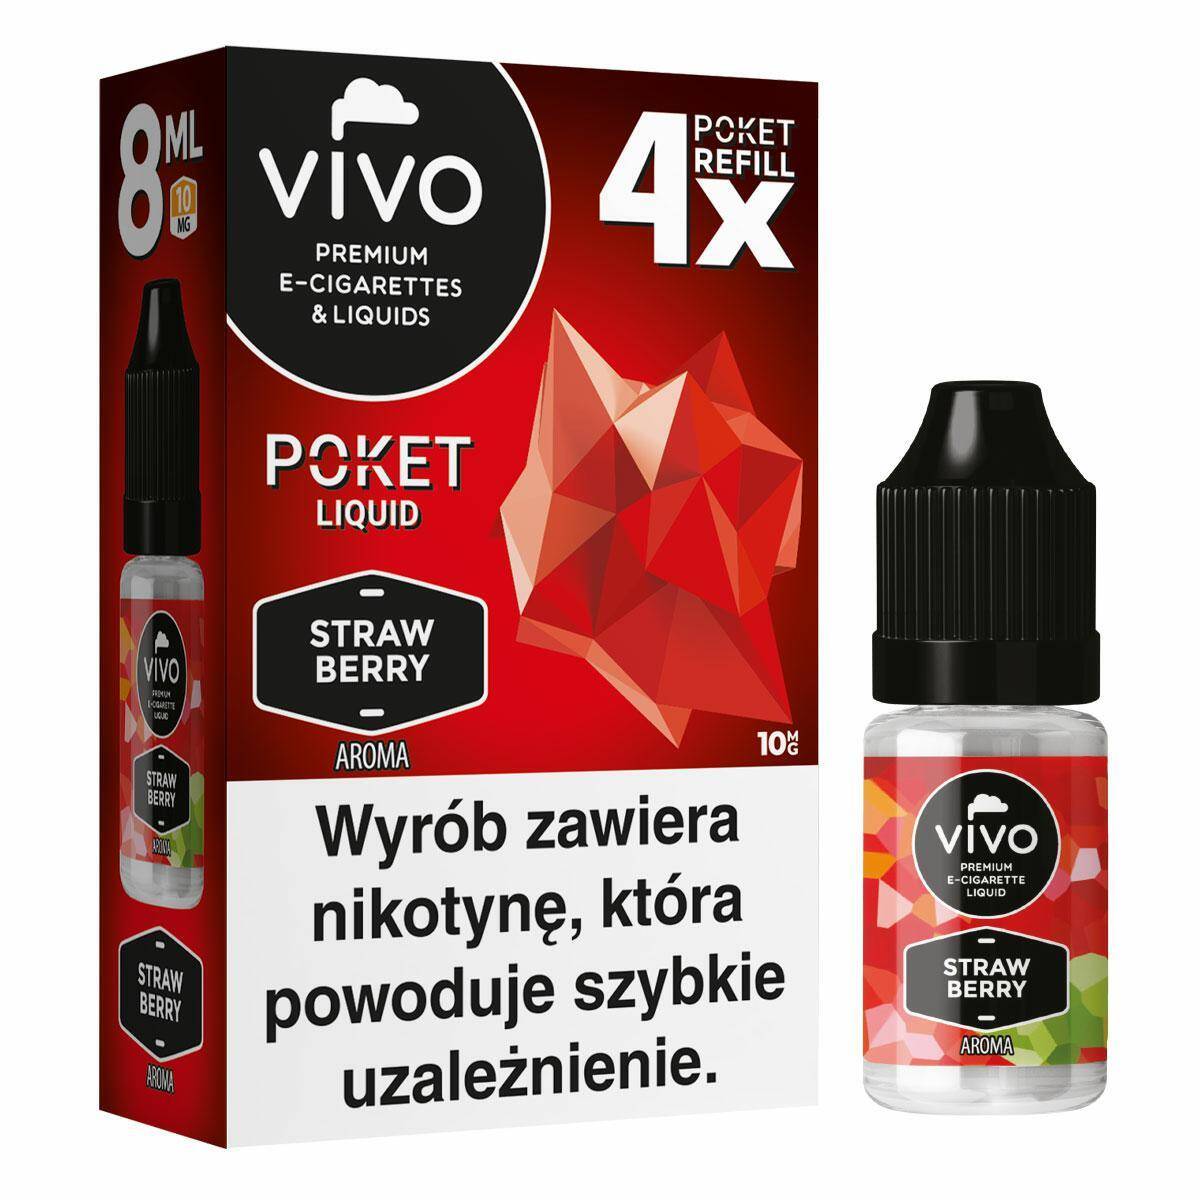 E-liquids VIVO POKET- Strawberry x4/10mg/8ml